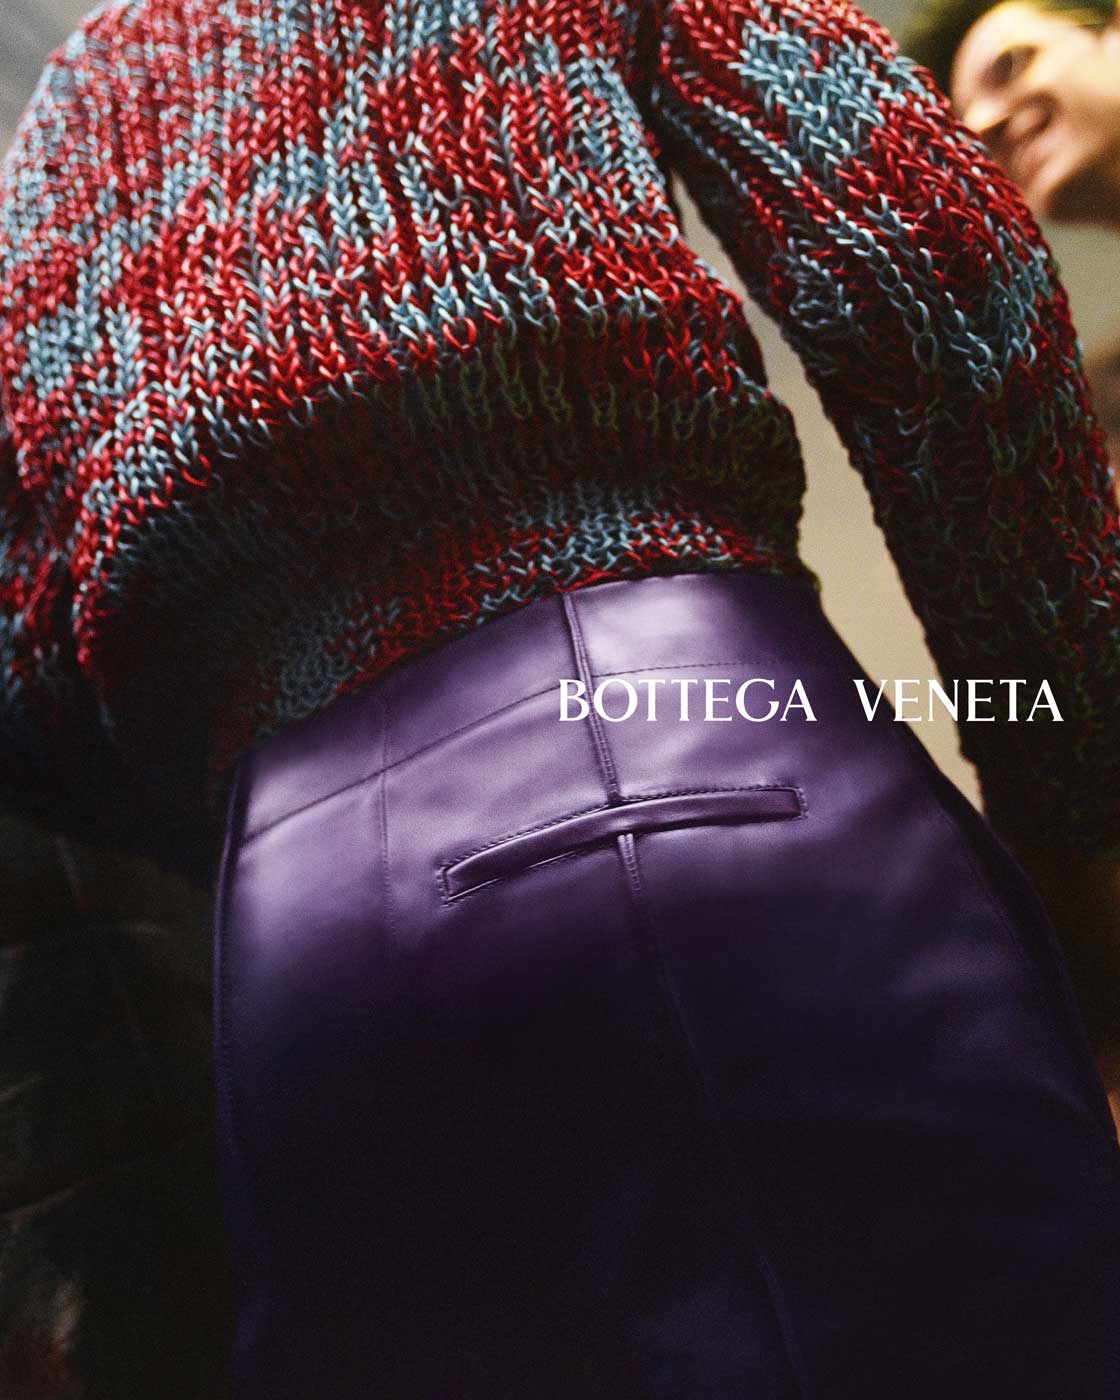 Bottega Veneta S/S 22 Campaign (Bottega Veneta)